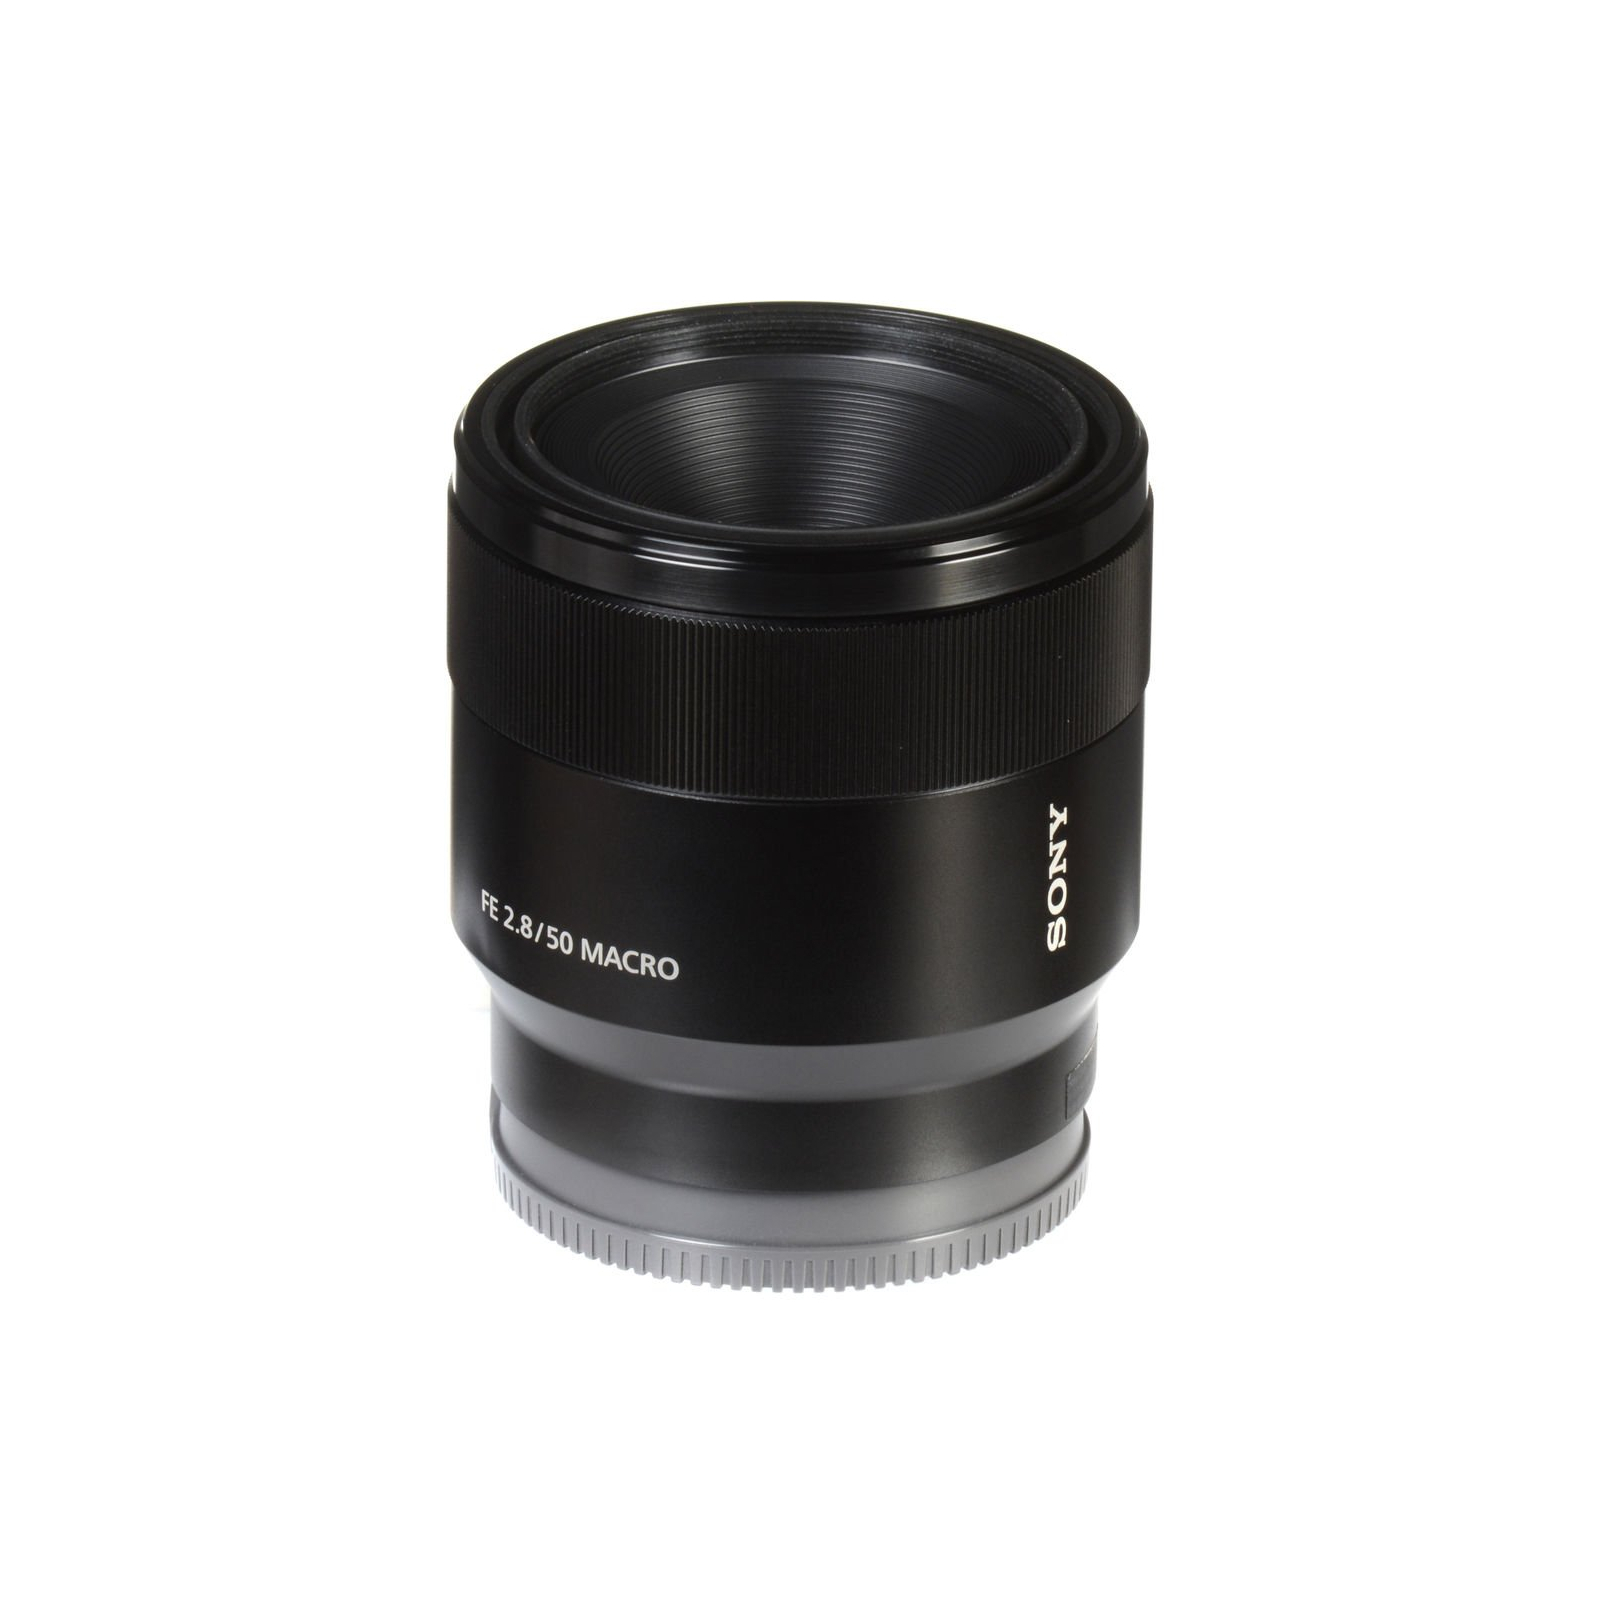 Об'єктив Sony 50mm, f/2.8 Macro для камер NEX FF (SEL50M28.SYX) зображення 6